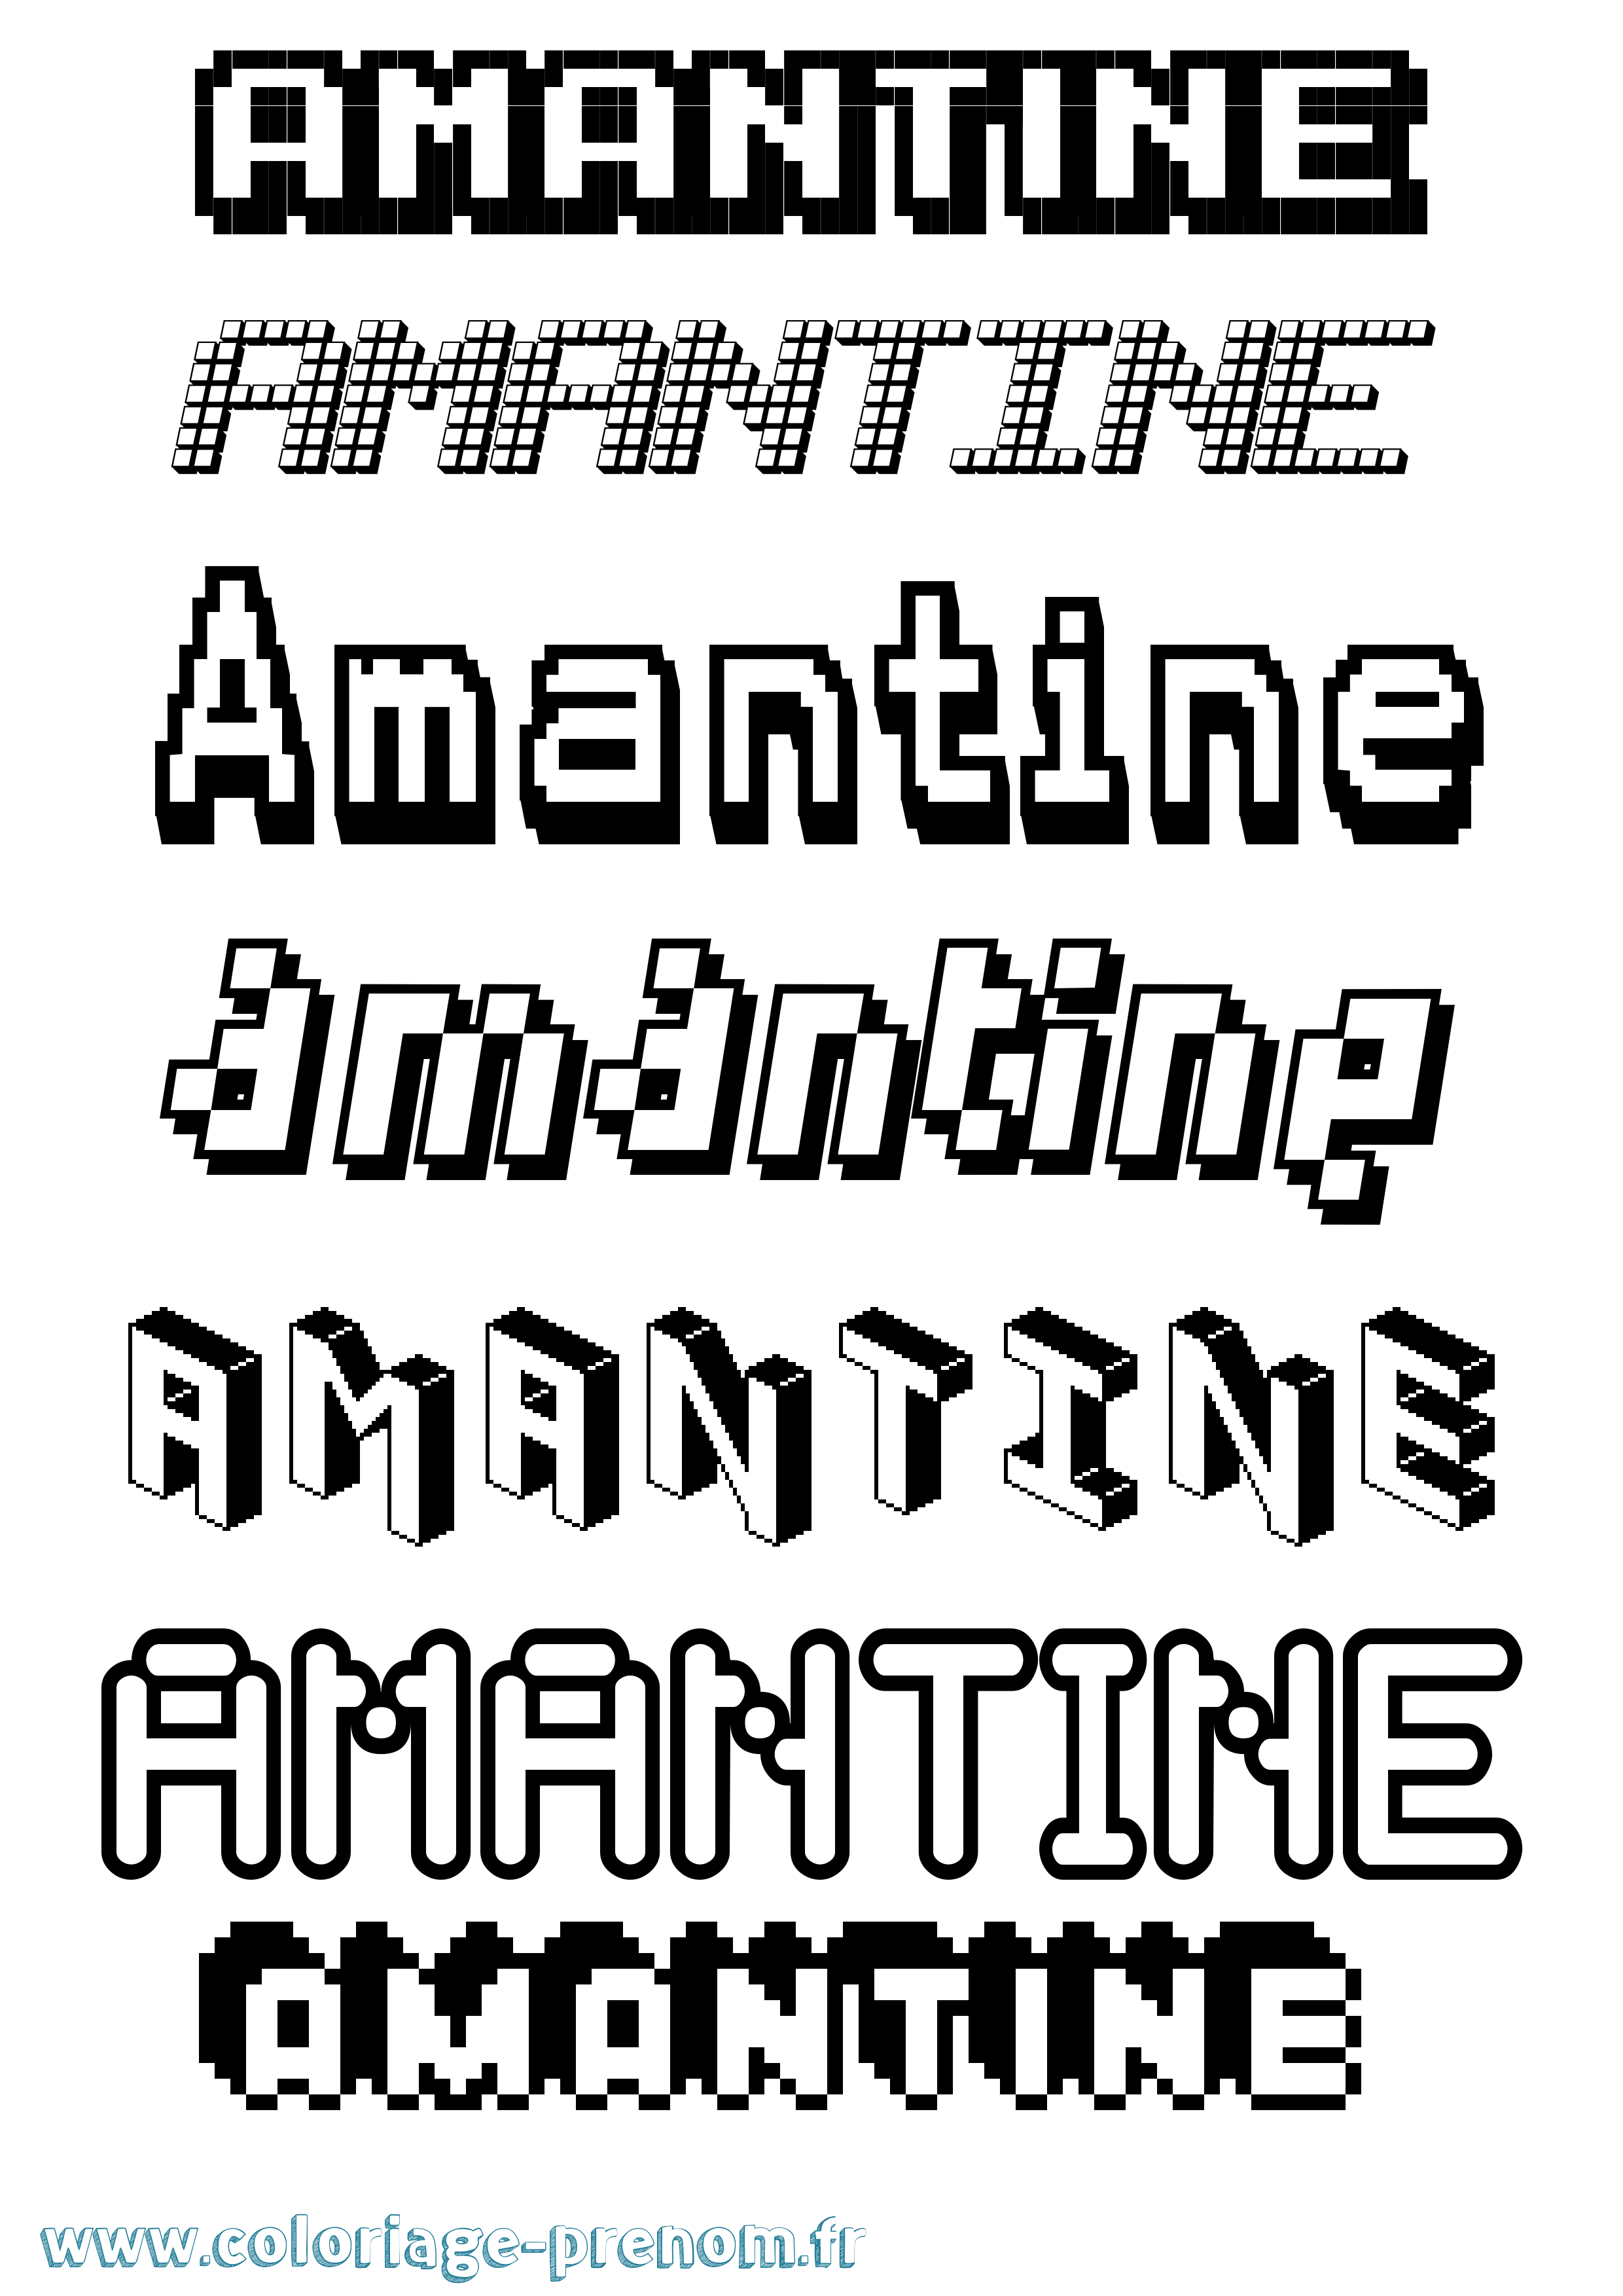 Coloriage prénom Amantine Pixel